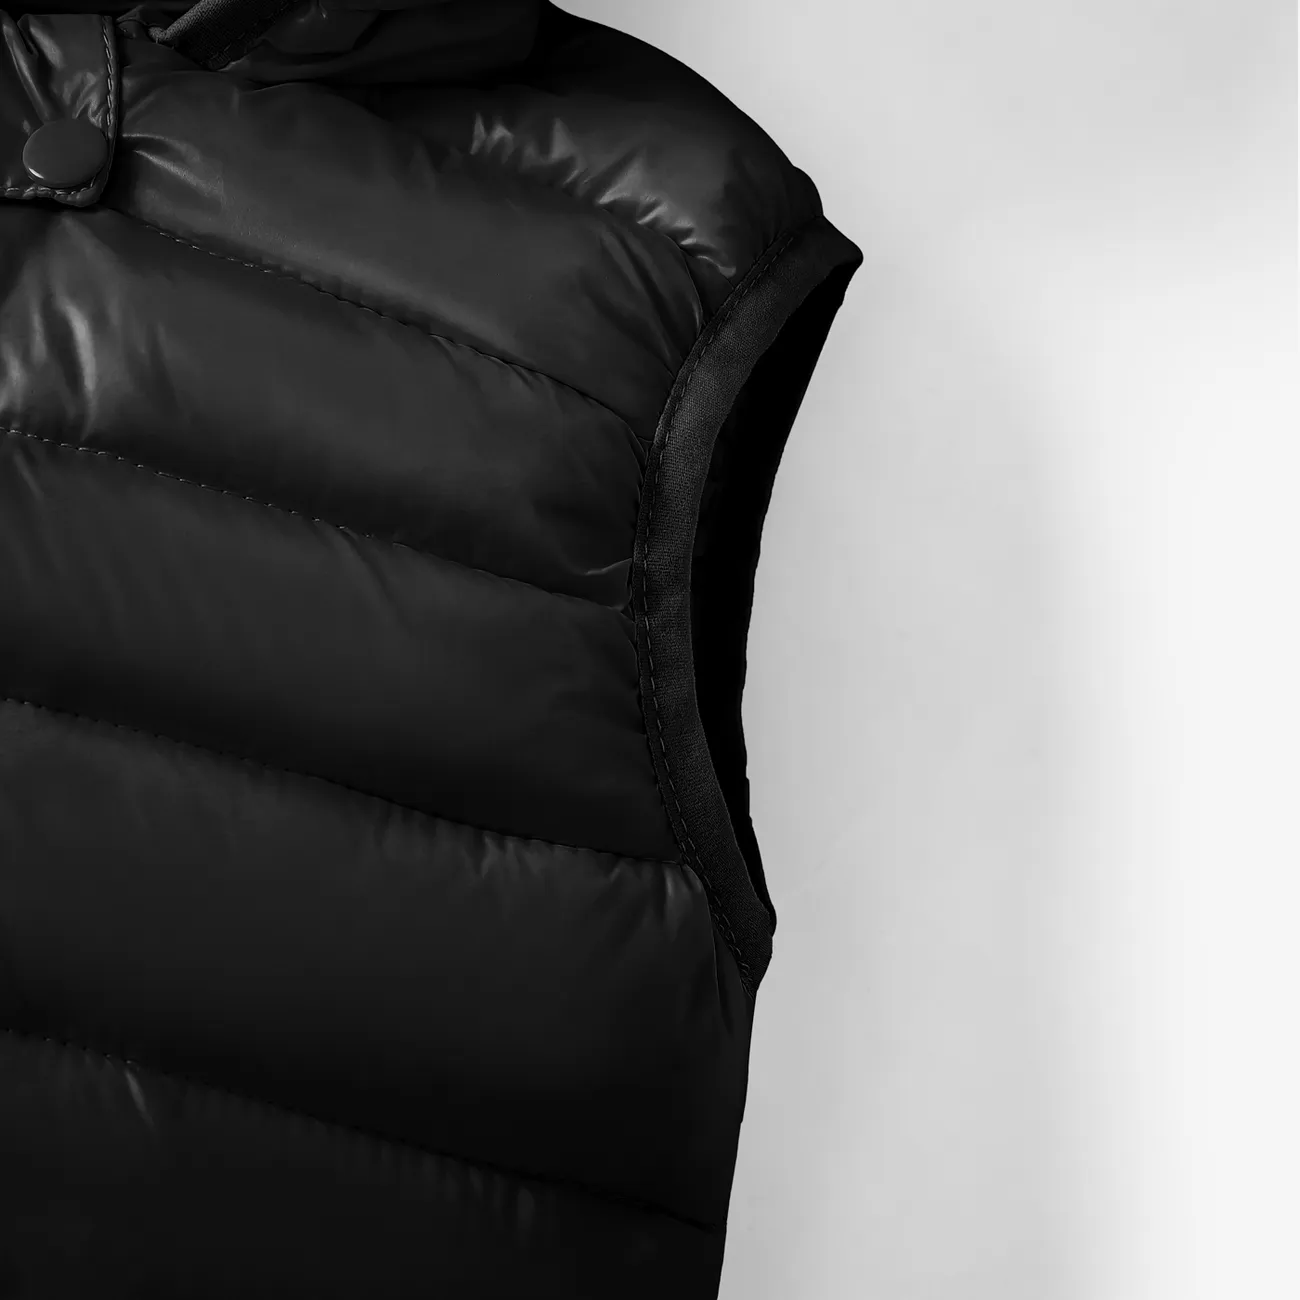 Toddler Boy/Girl Childlike 3D Ear Design Solid Vest Coat Black big image 1